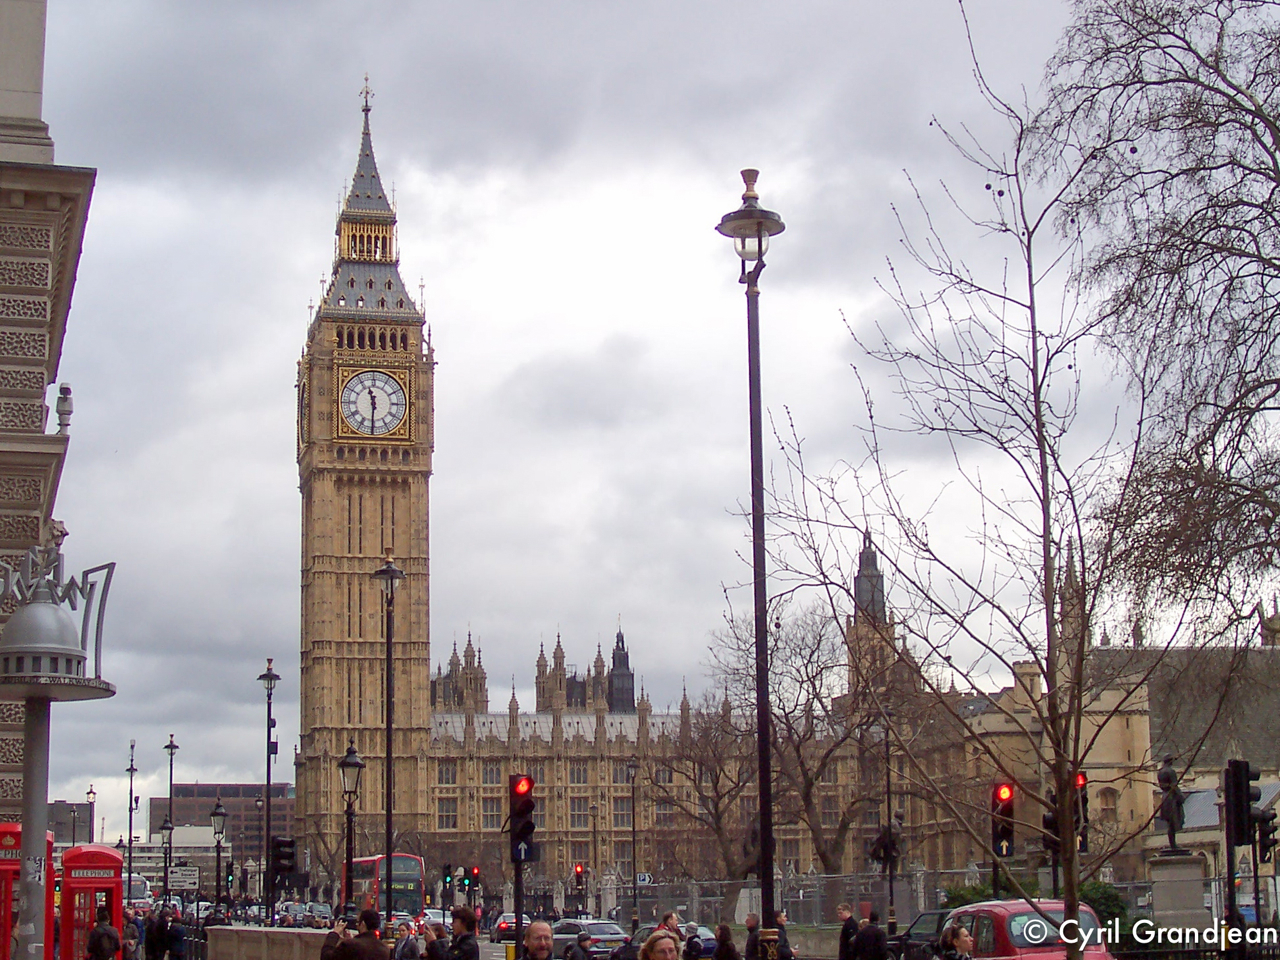 Big Ben - UK Parliament